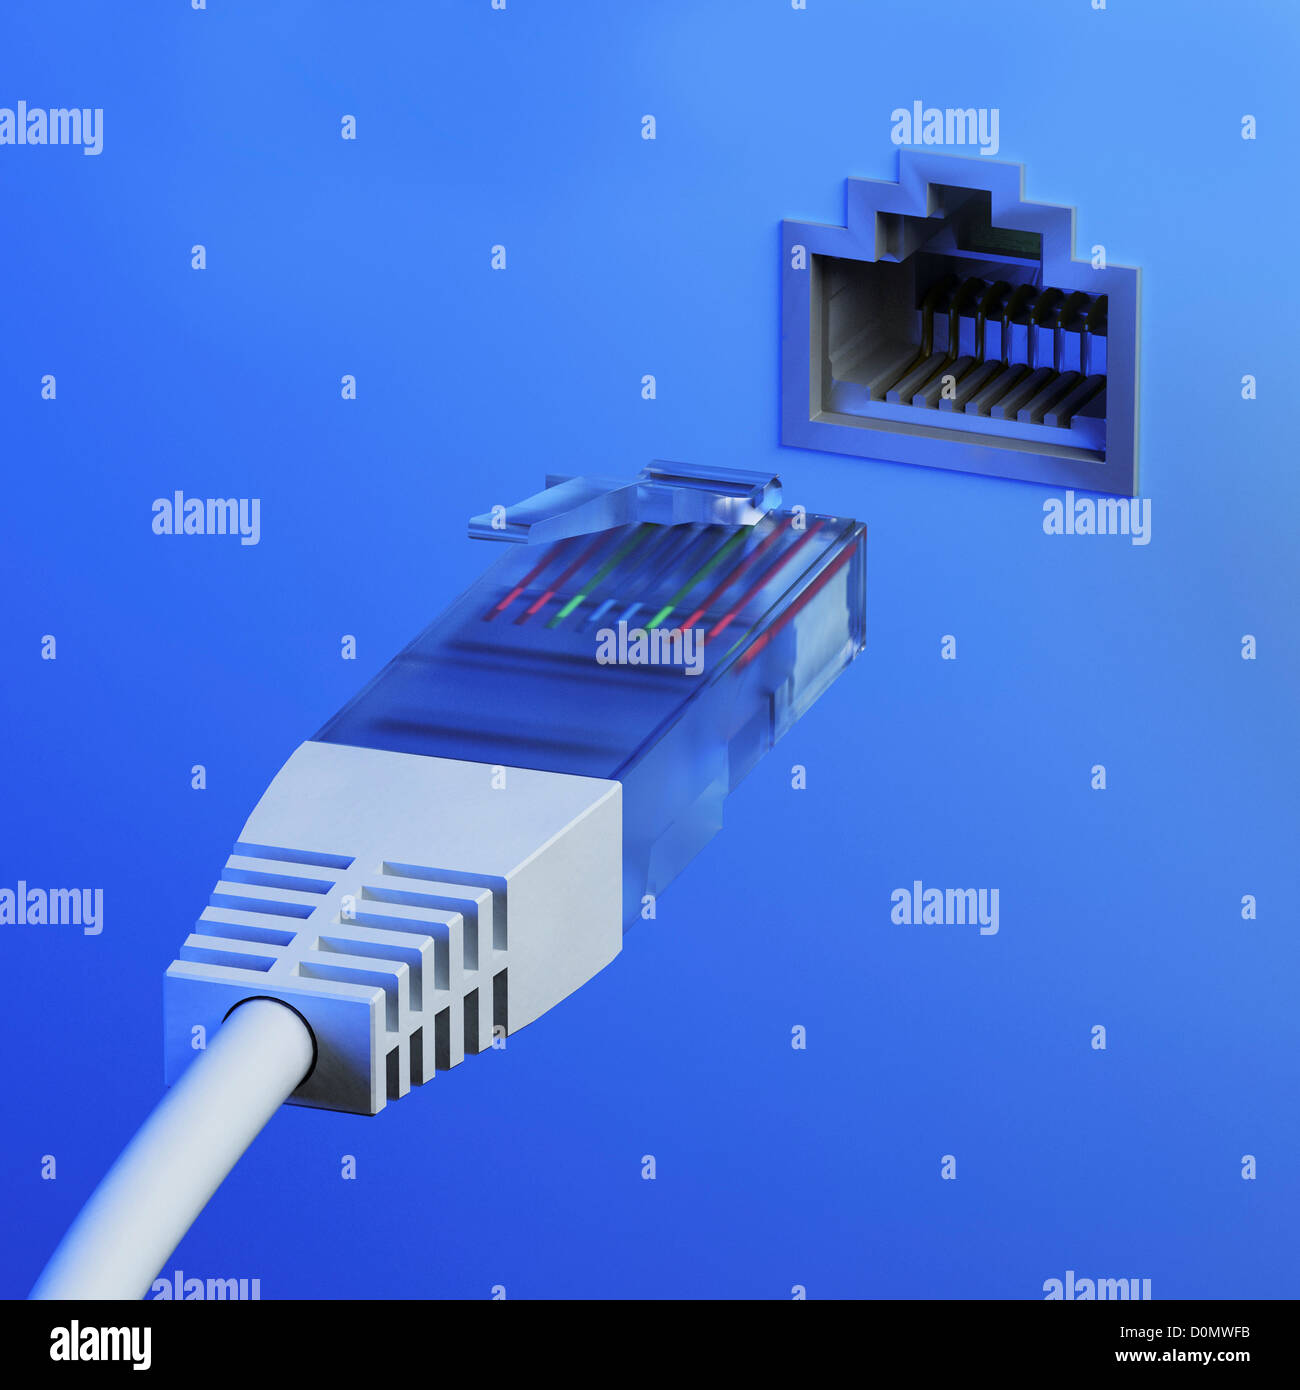 LAN-Kabel in eine Steckdose Stockfotografie - Alamy